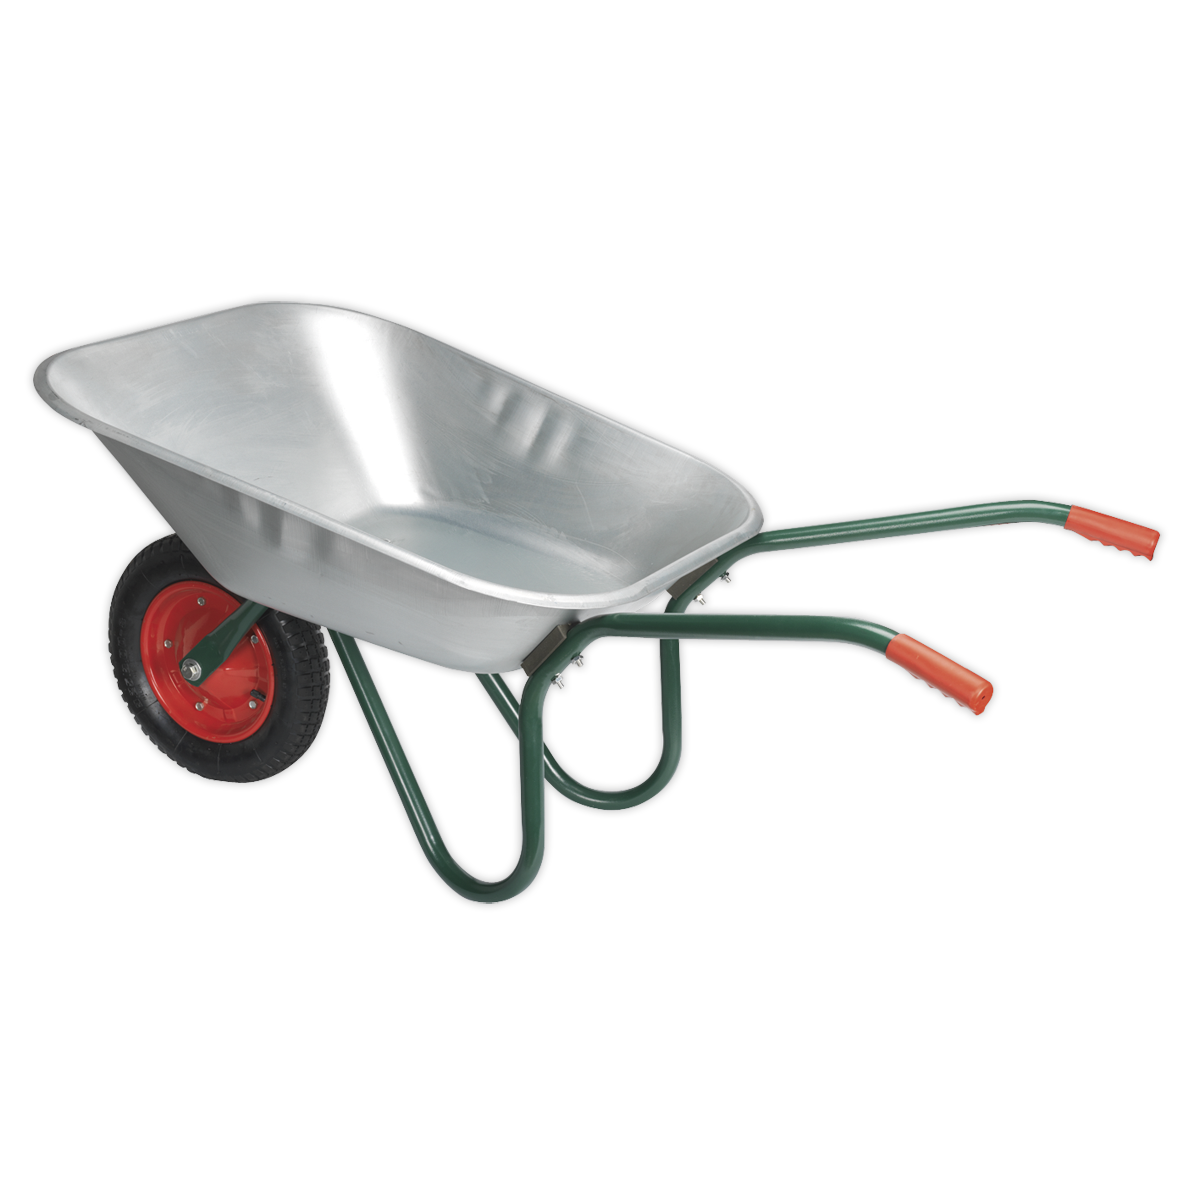 Sealey durable garden wheelbarrow